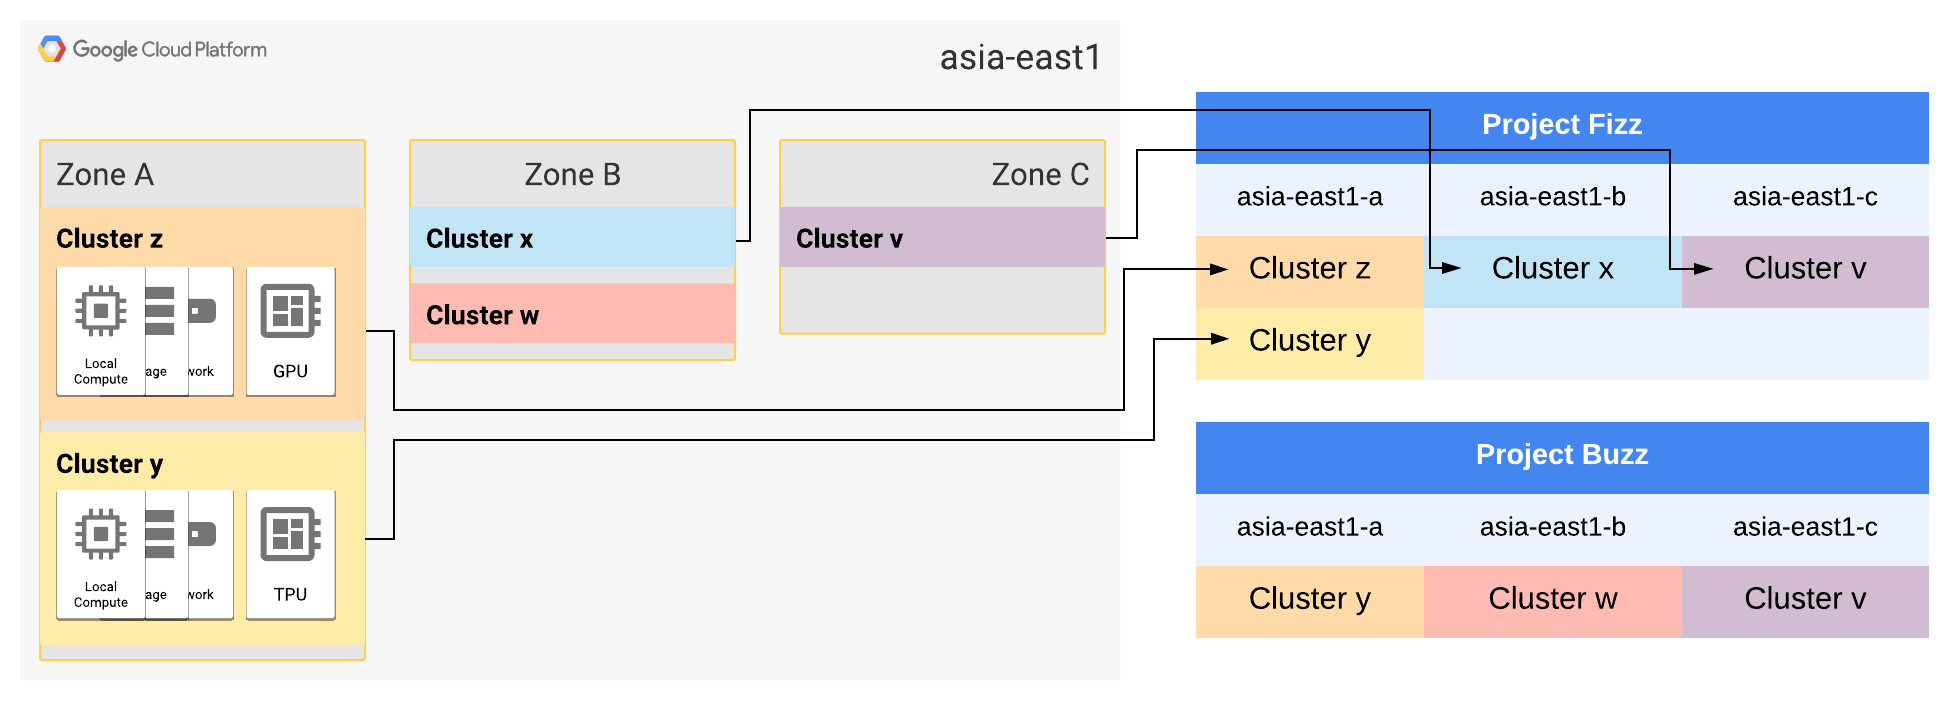 Les zones A et B de la région asia-east1 ont chacune été étendues à deux clusters.